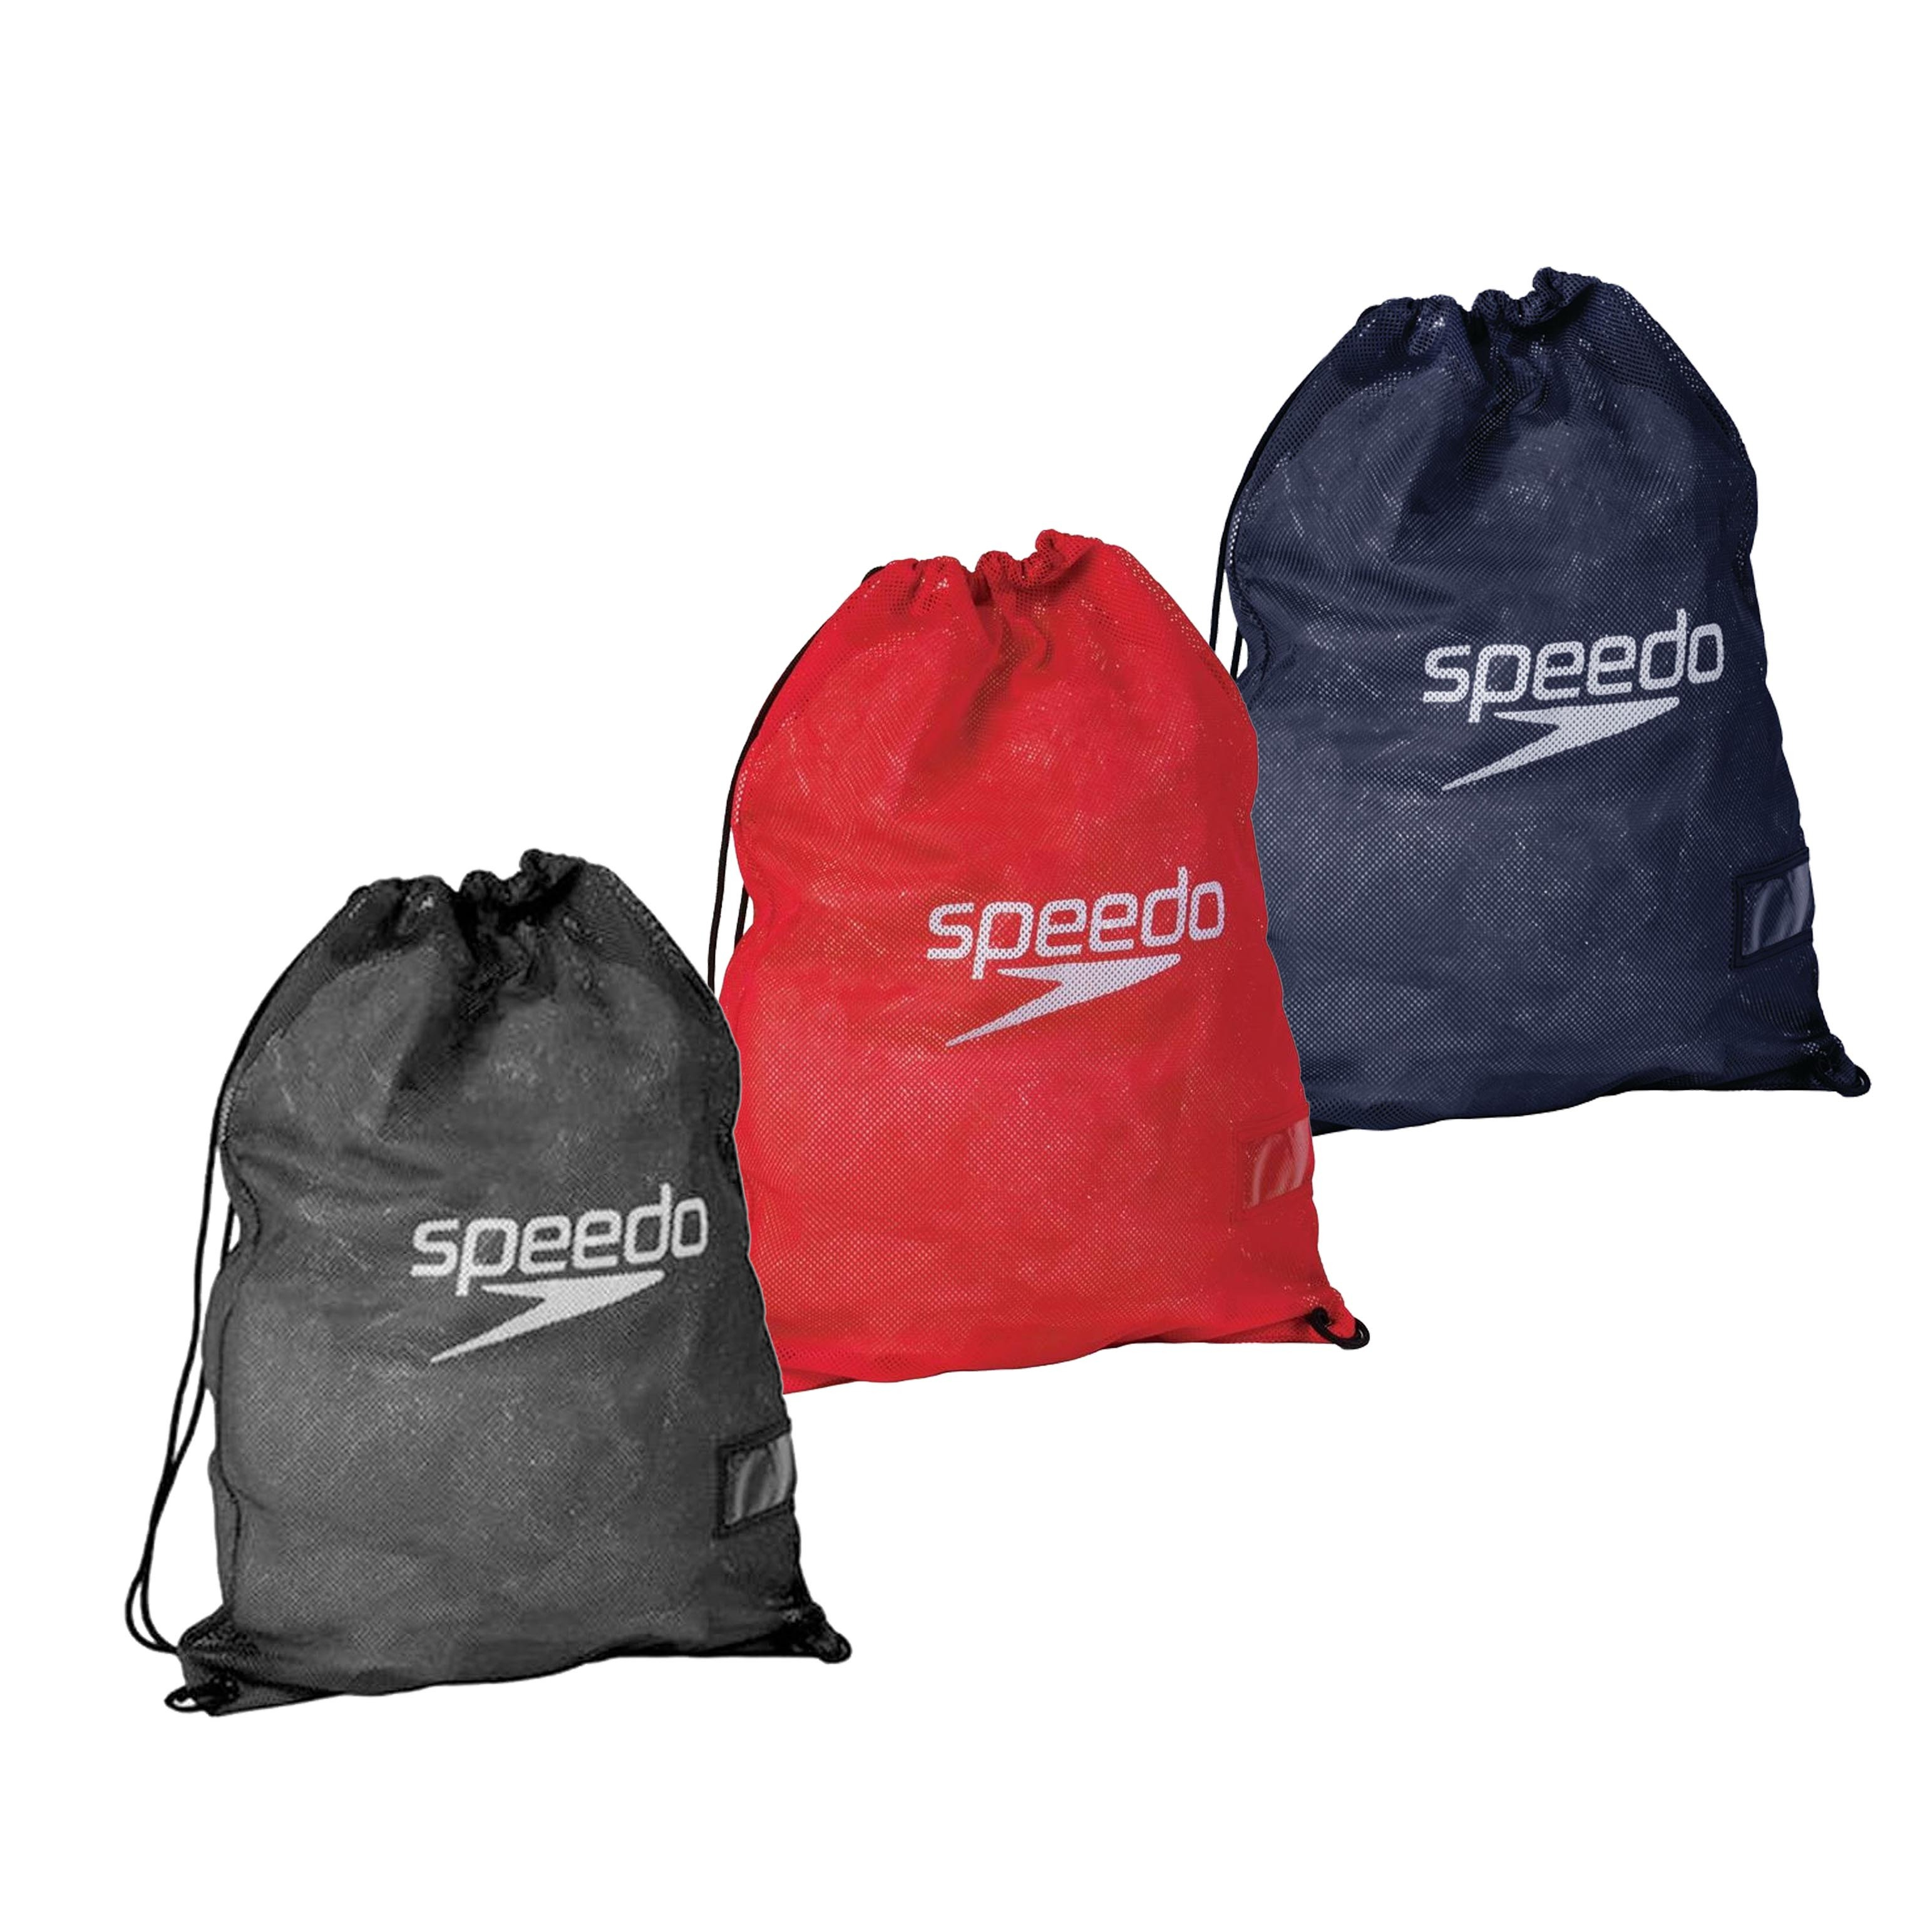 Speedo Black Equipment Mesh Wet Kit Swim Bag 